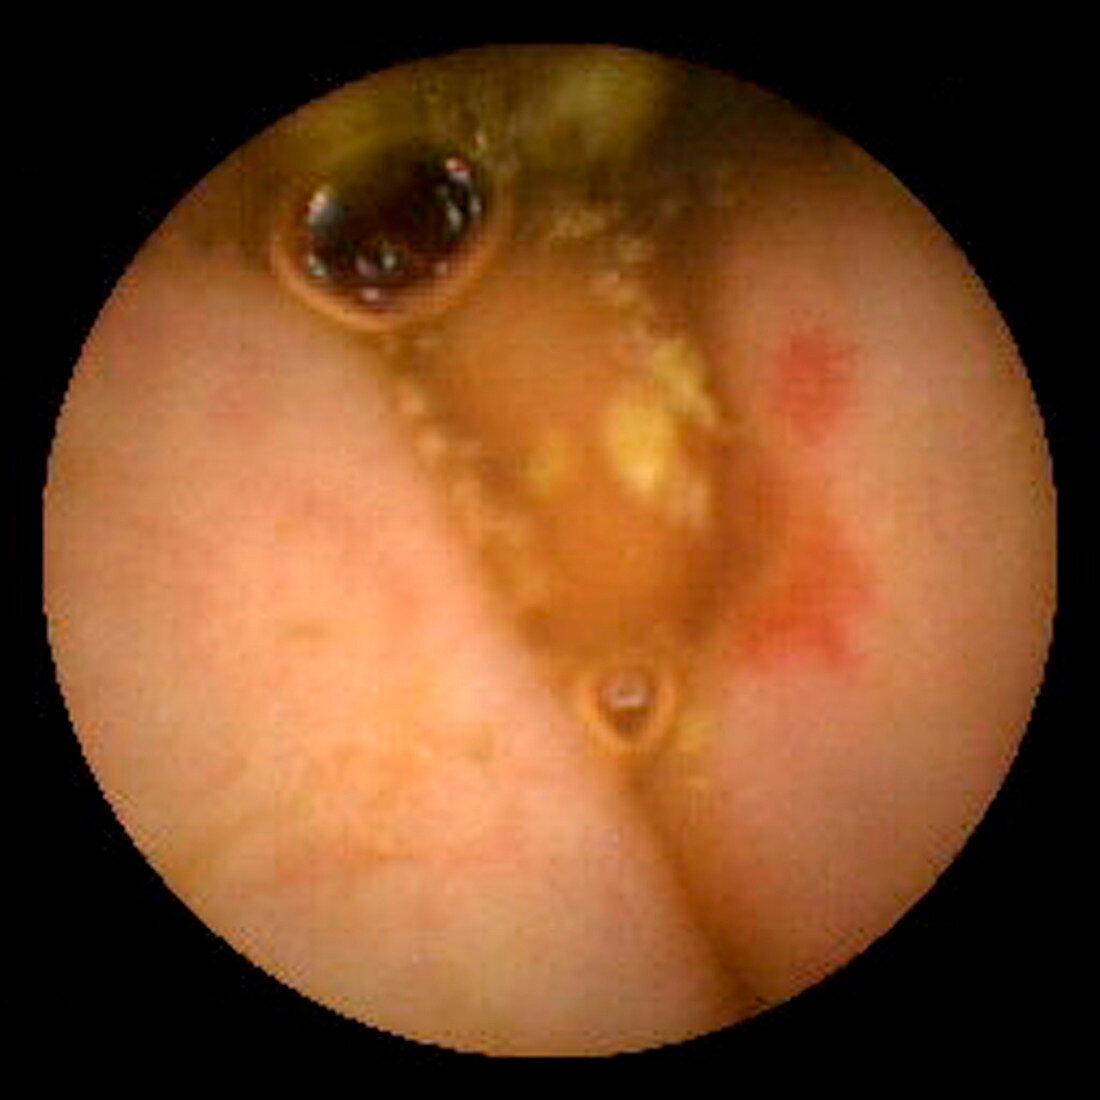 Angiodysplasia of the colon,pill camera